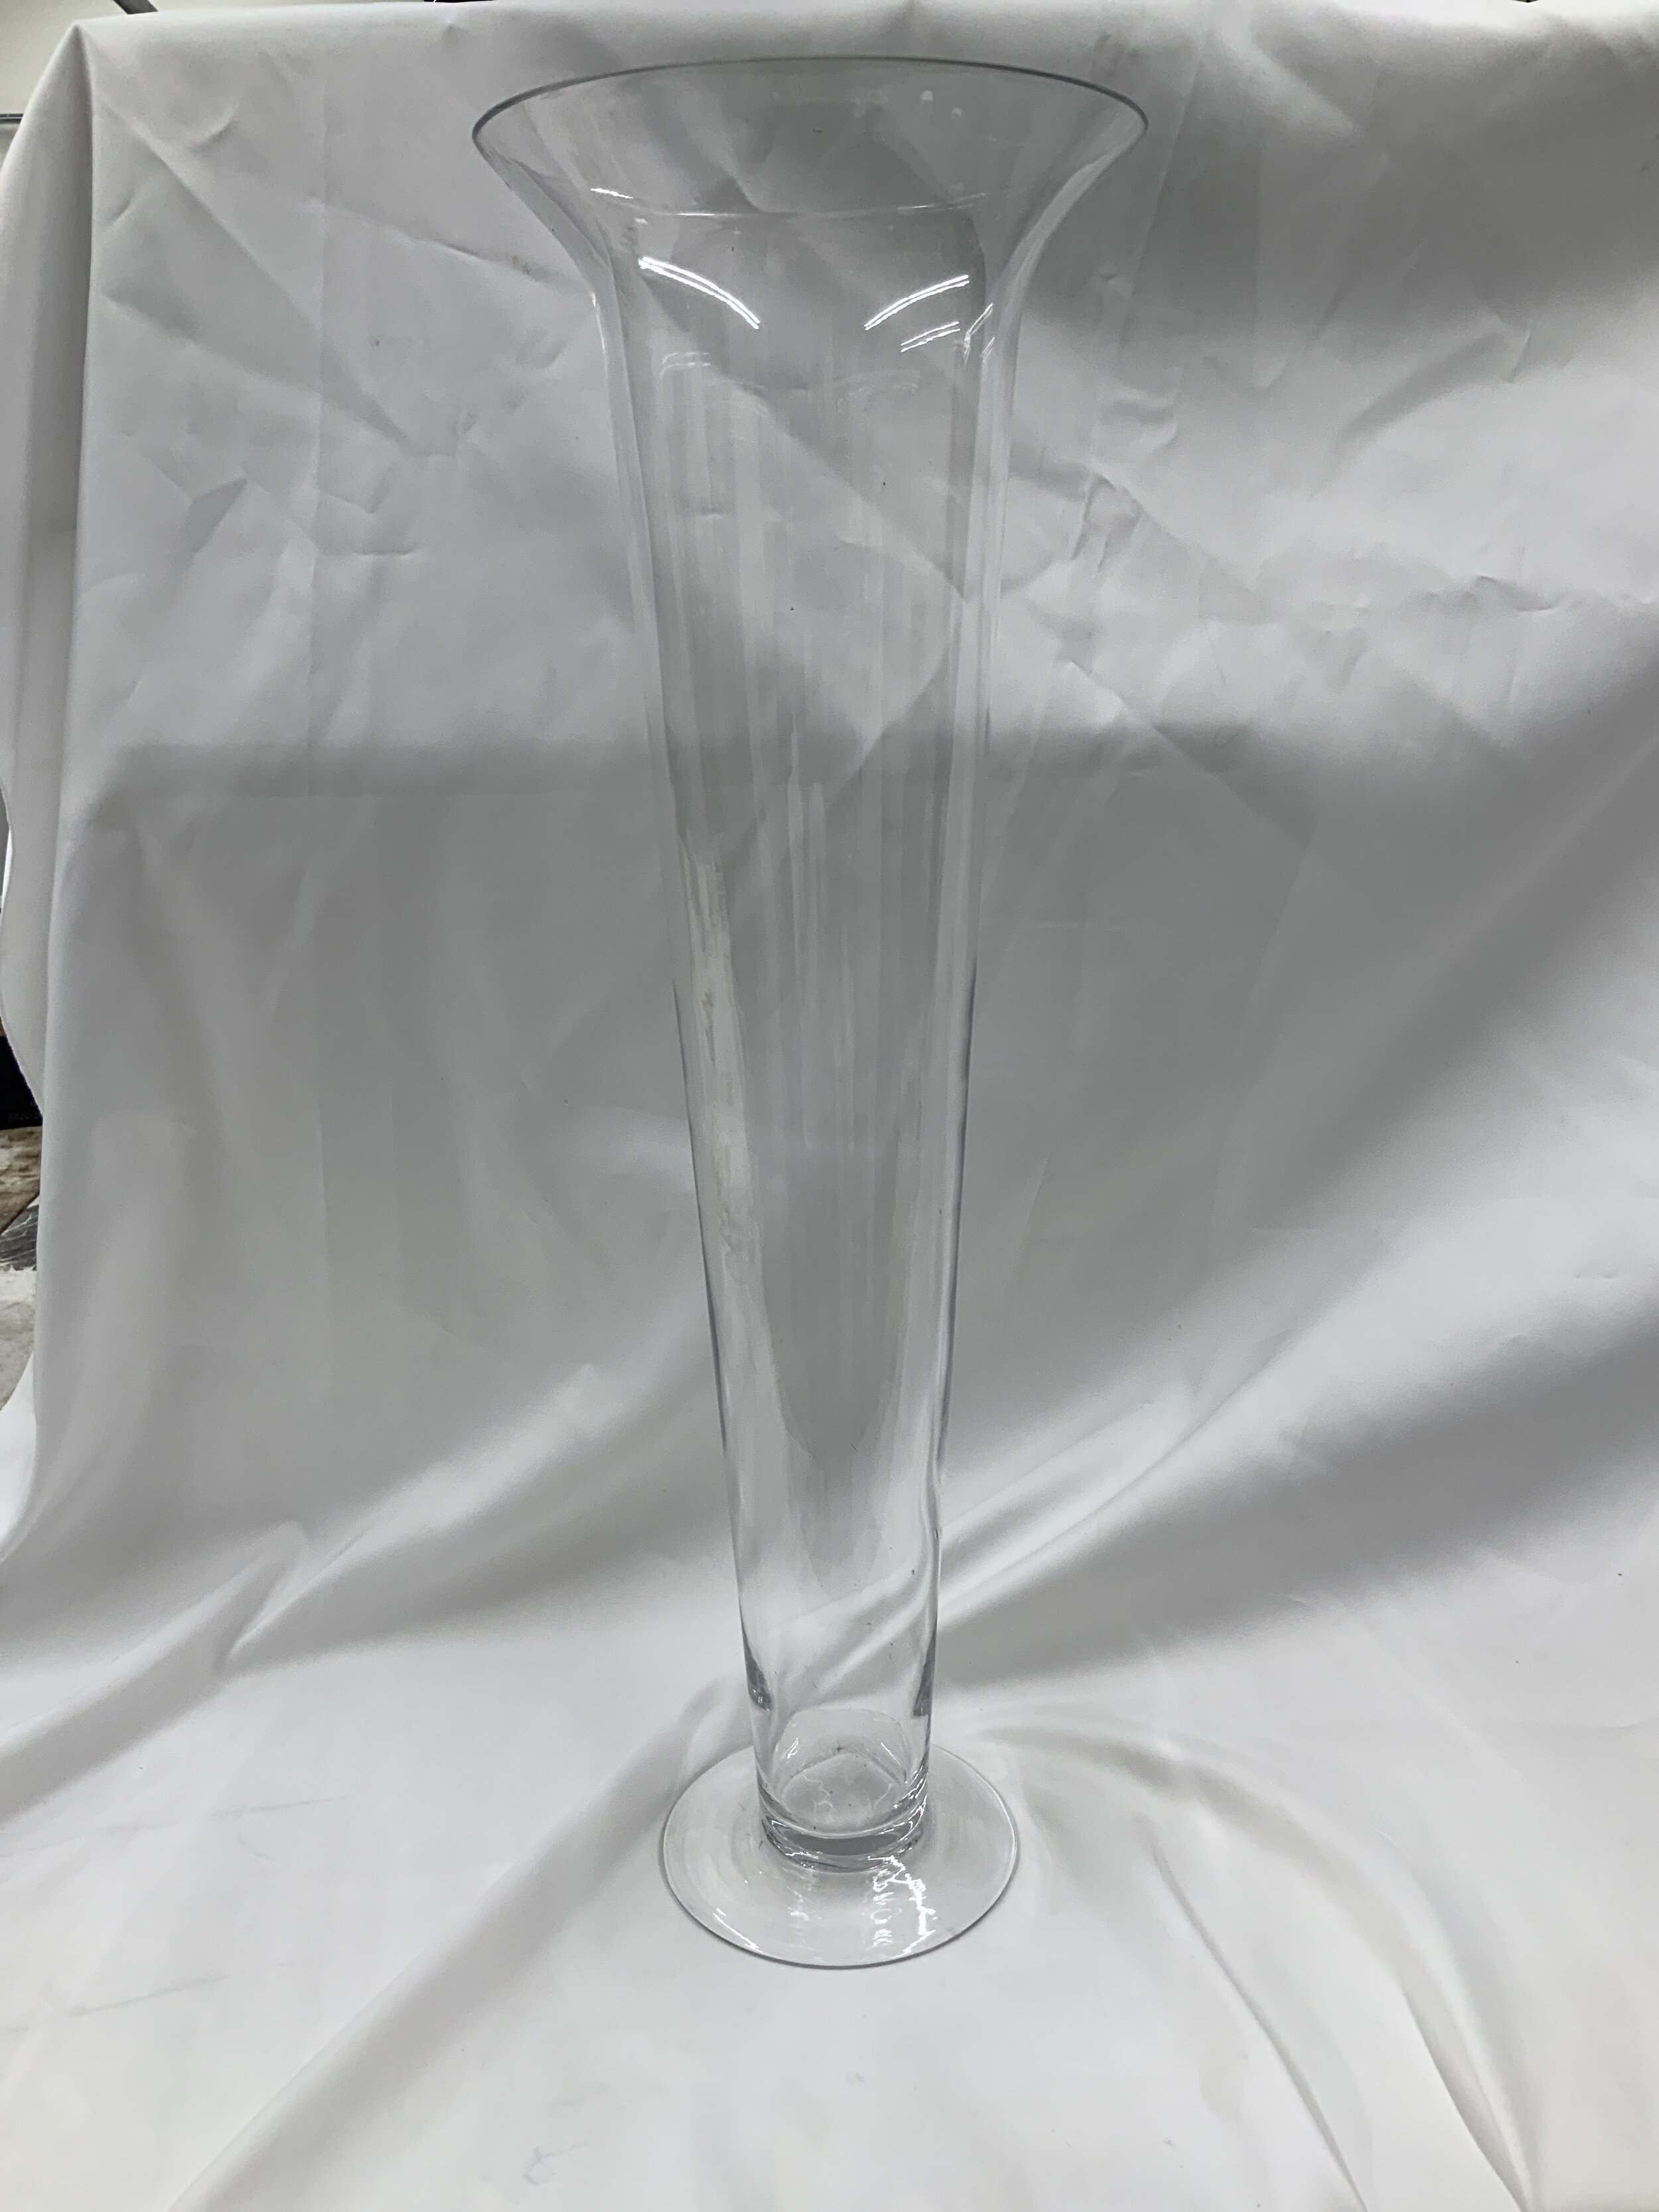 Curved trumpet vase (2) - $10